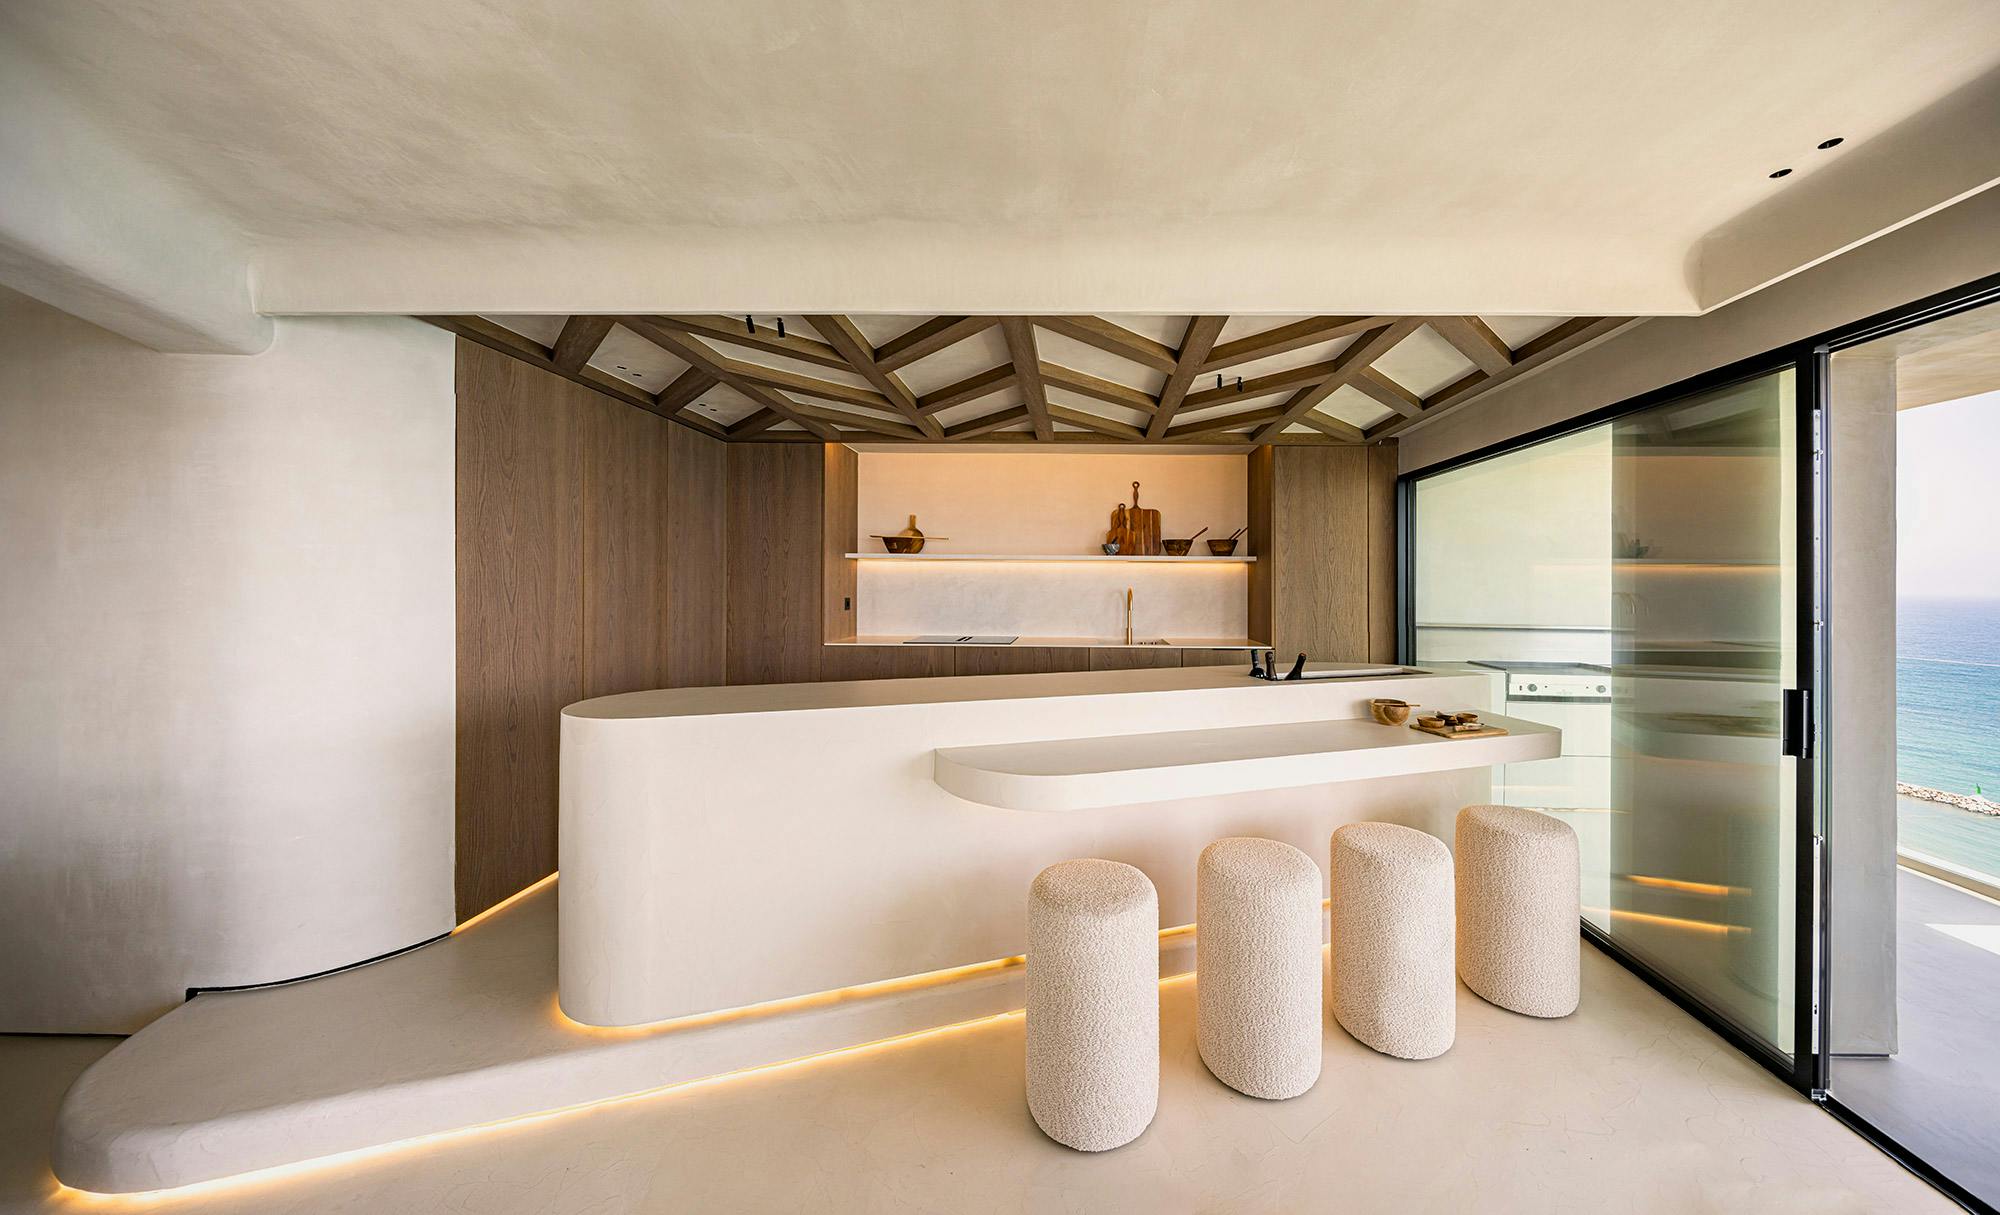 Numero immagine 41 della sezione corrente di Natural light partners with Dekton Marmorio to create an enveloping, sophisticated bathroom di Cosentino Italia